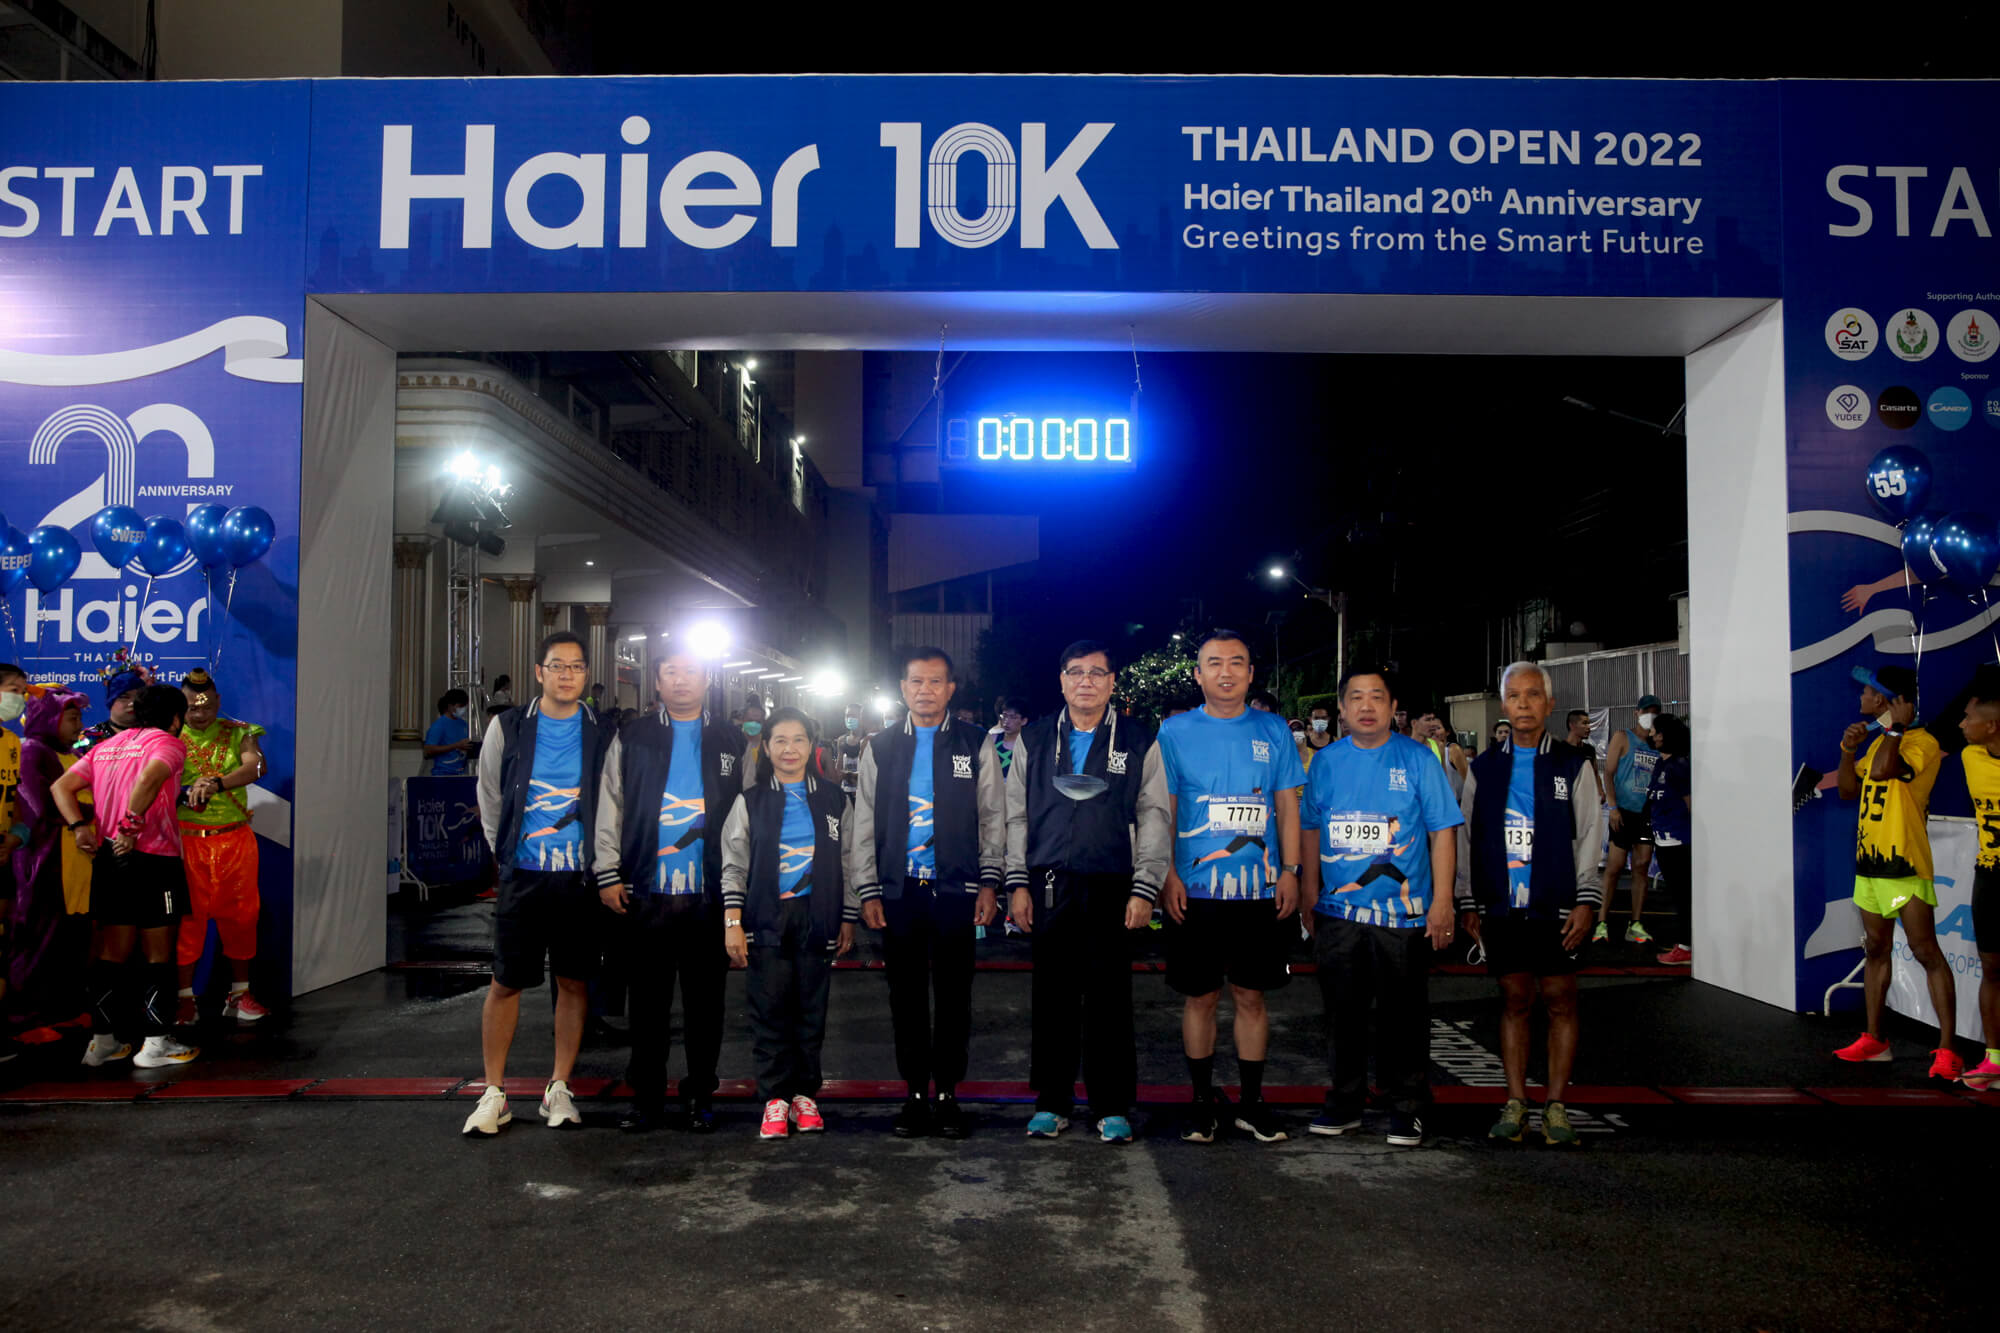 สุดคึกคัก! งานวิ่งมินิมาราธอนครั้งใหญ่แห่งปี “Haier 10K Thailand Open 2022”